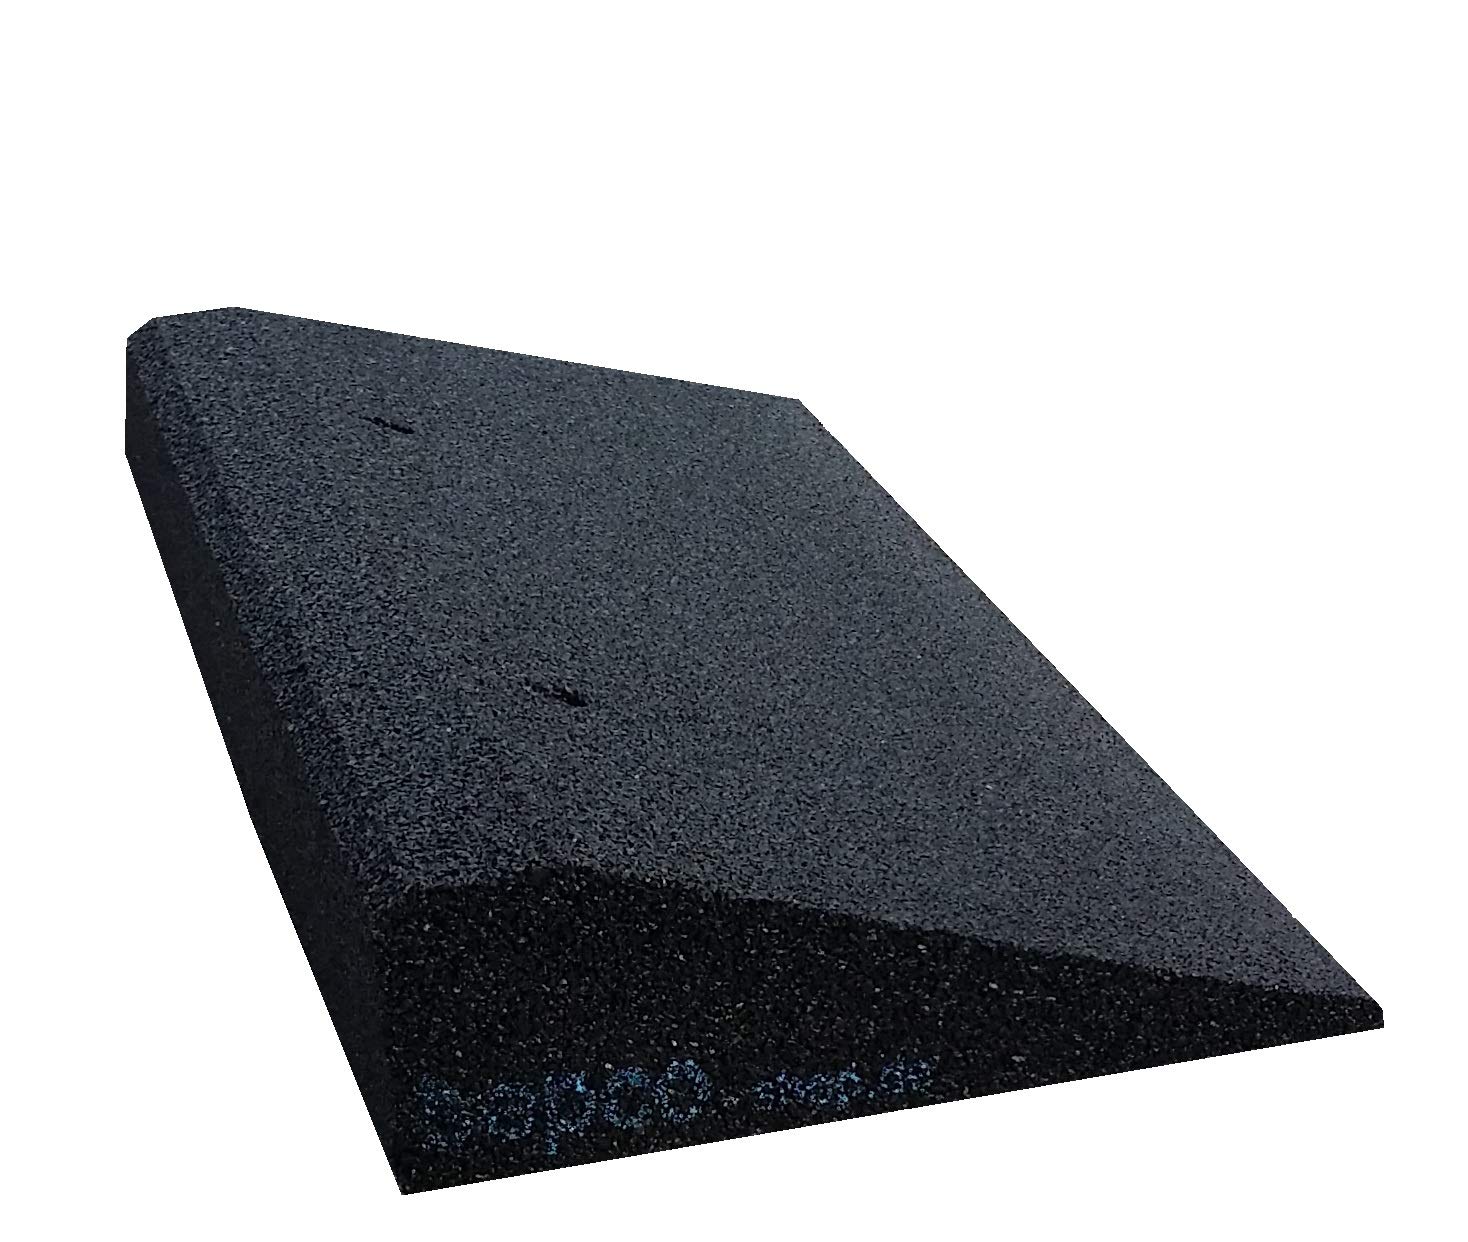 bepco Bordsteinkanten-Rampe LxBxH: 50 x 25 x 10 cm aus Gummi (schwarz) Auffahrrampe,Türschwellenrampe, mit eingelagerten Unterlegscheiben zur Befestigung